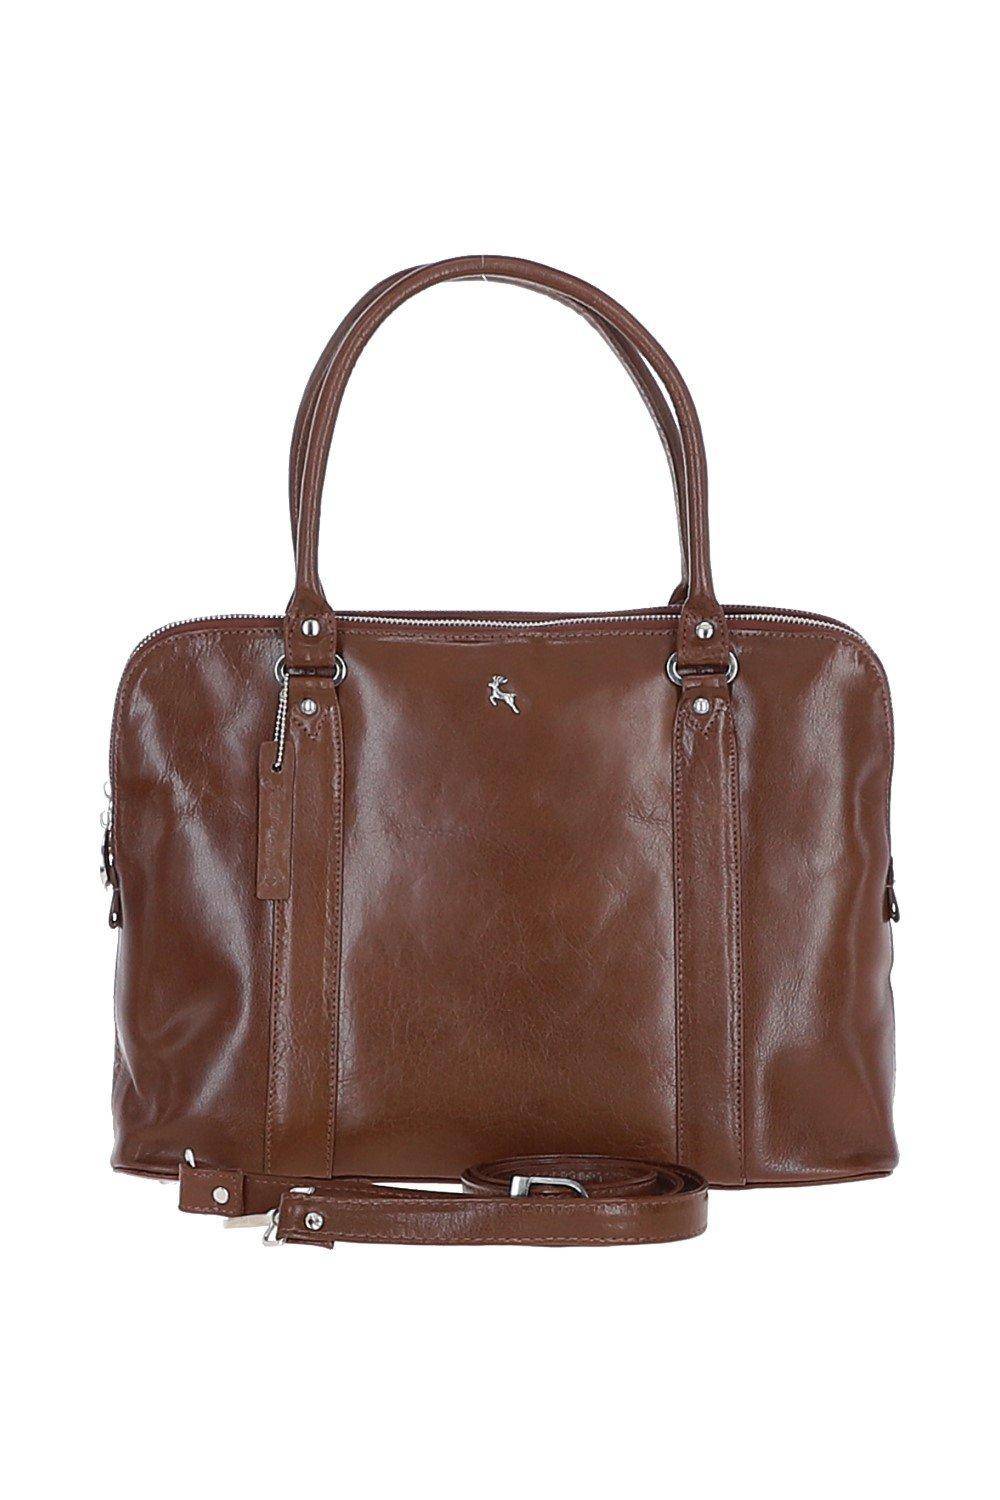 Большая трехсекционная кожаная сумка растительного дубления Ashwood Leather, коричневый сумка поясная повседневная натуральная кожа внутренний карман регулируемый ремень коричневый